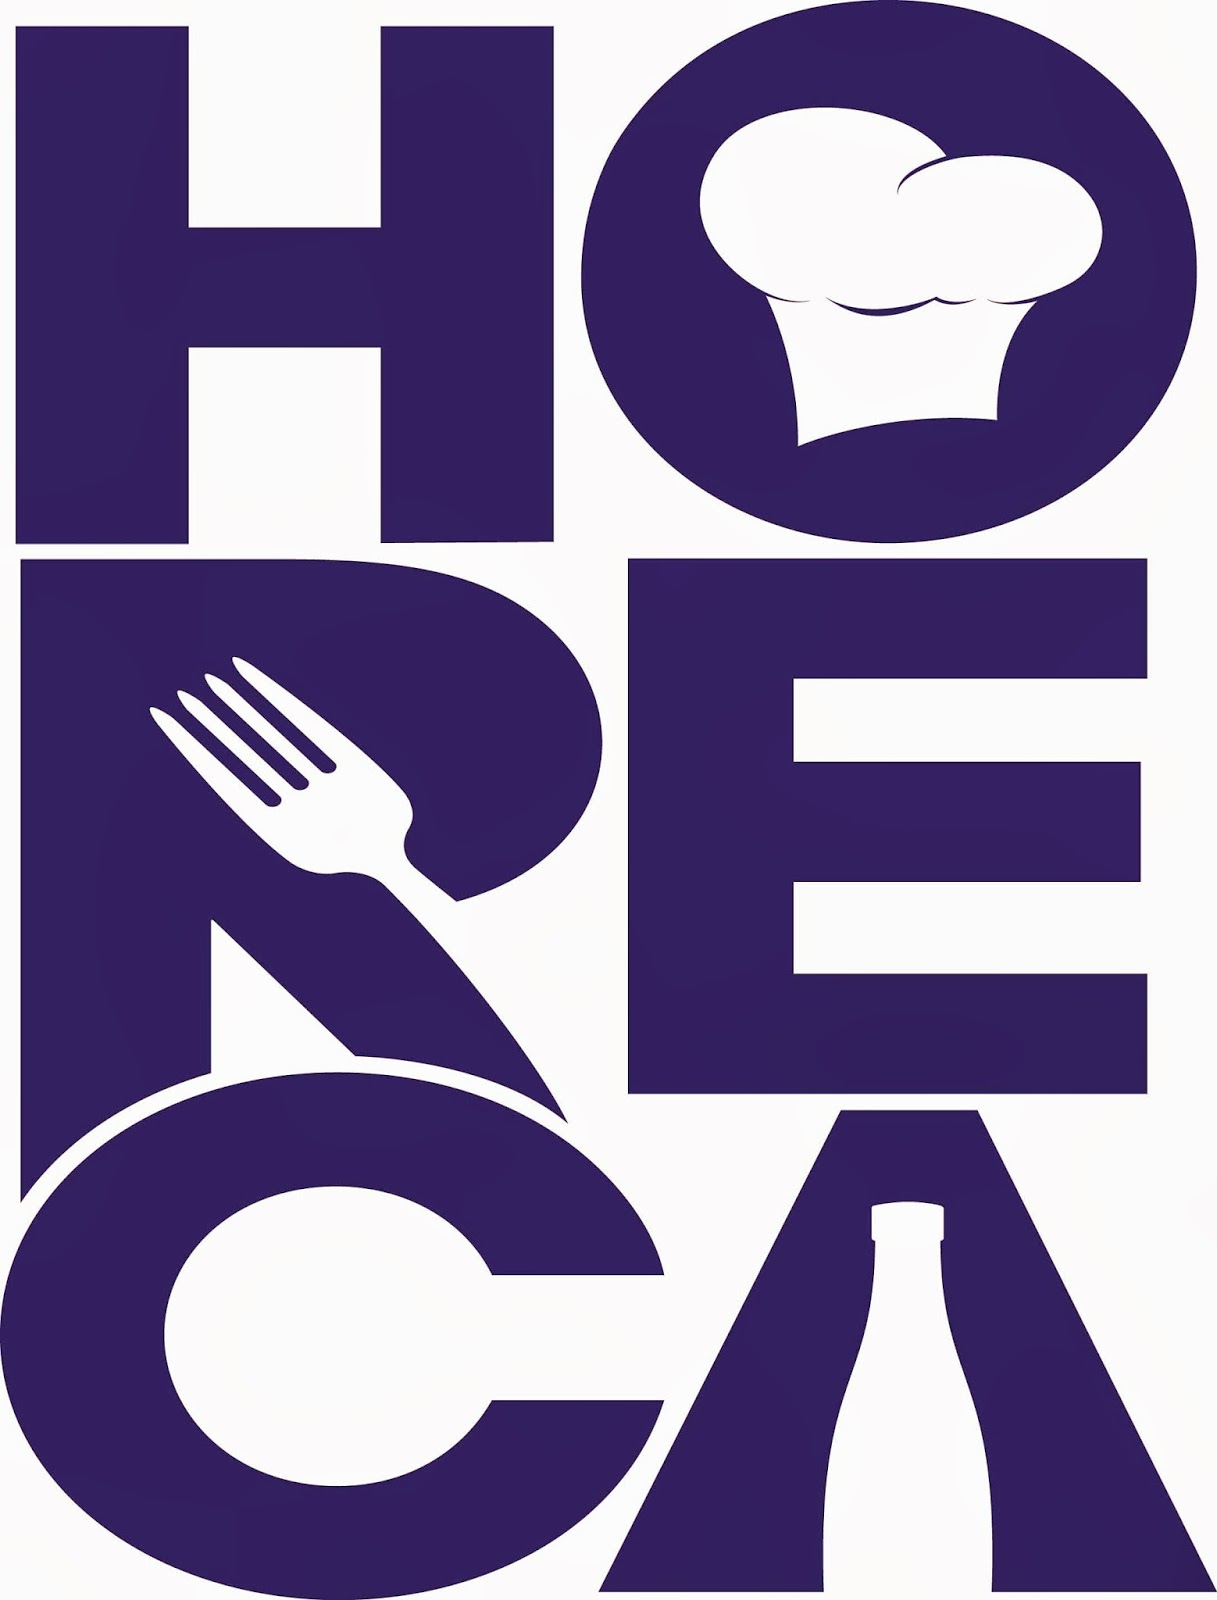 horeca-trade-horeca-trade-the-leading-food-service-partner